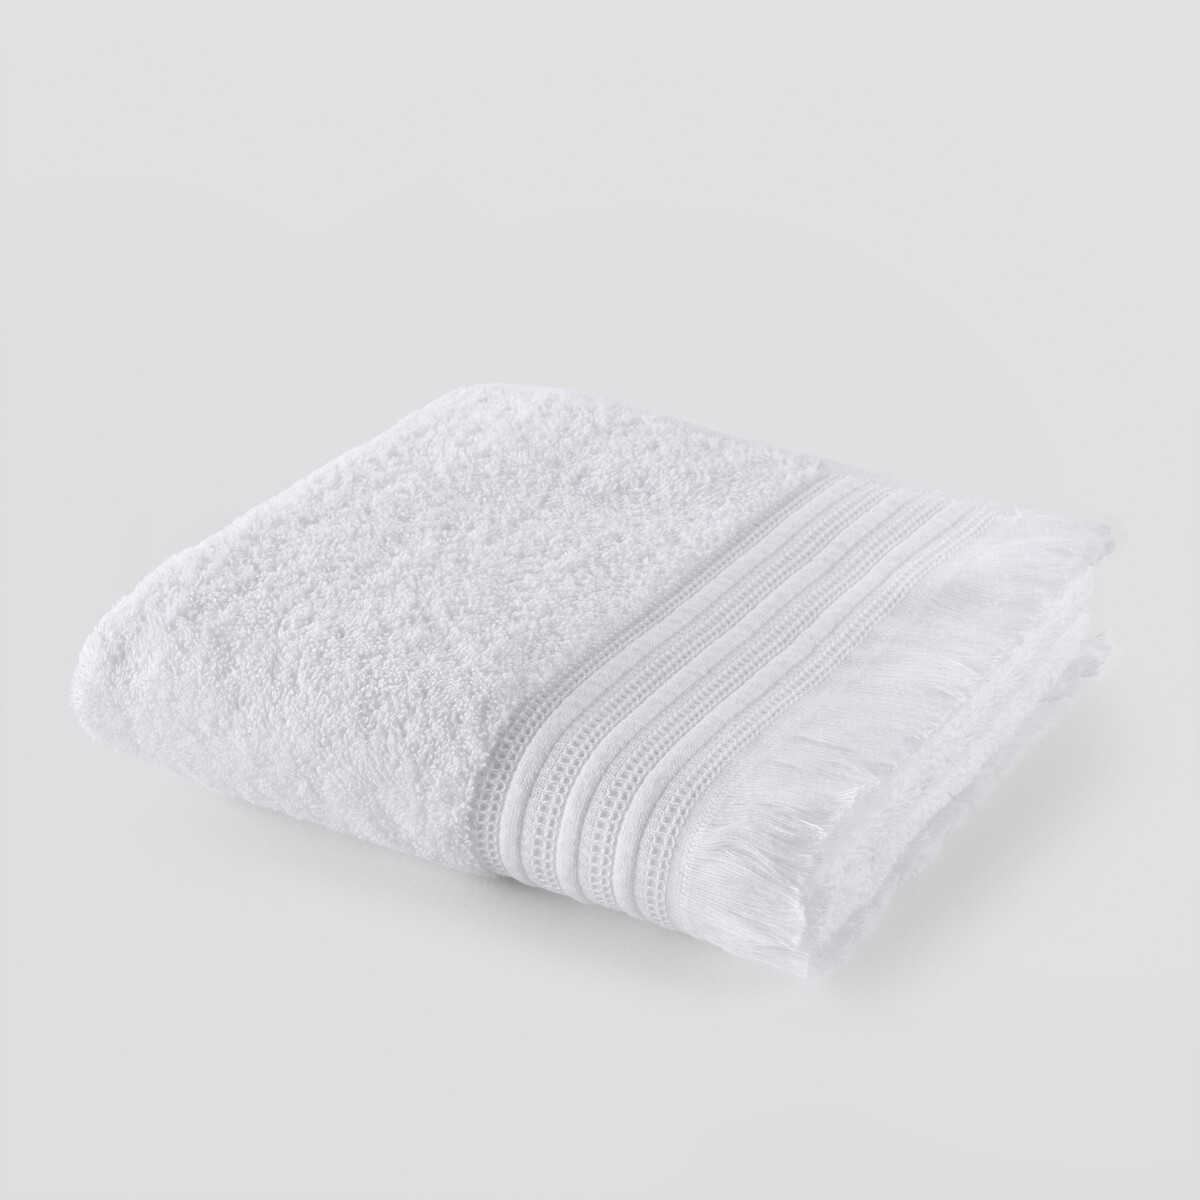 Полотенце LaRedoute Банное из махровой ткани 430г Cabourg 50 x 100 см белый, размер 50 x 100 см